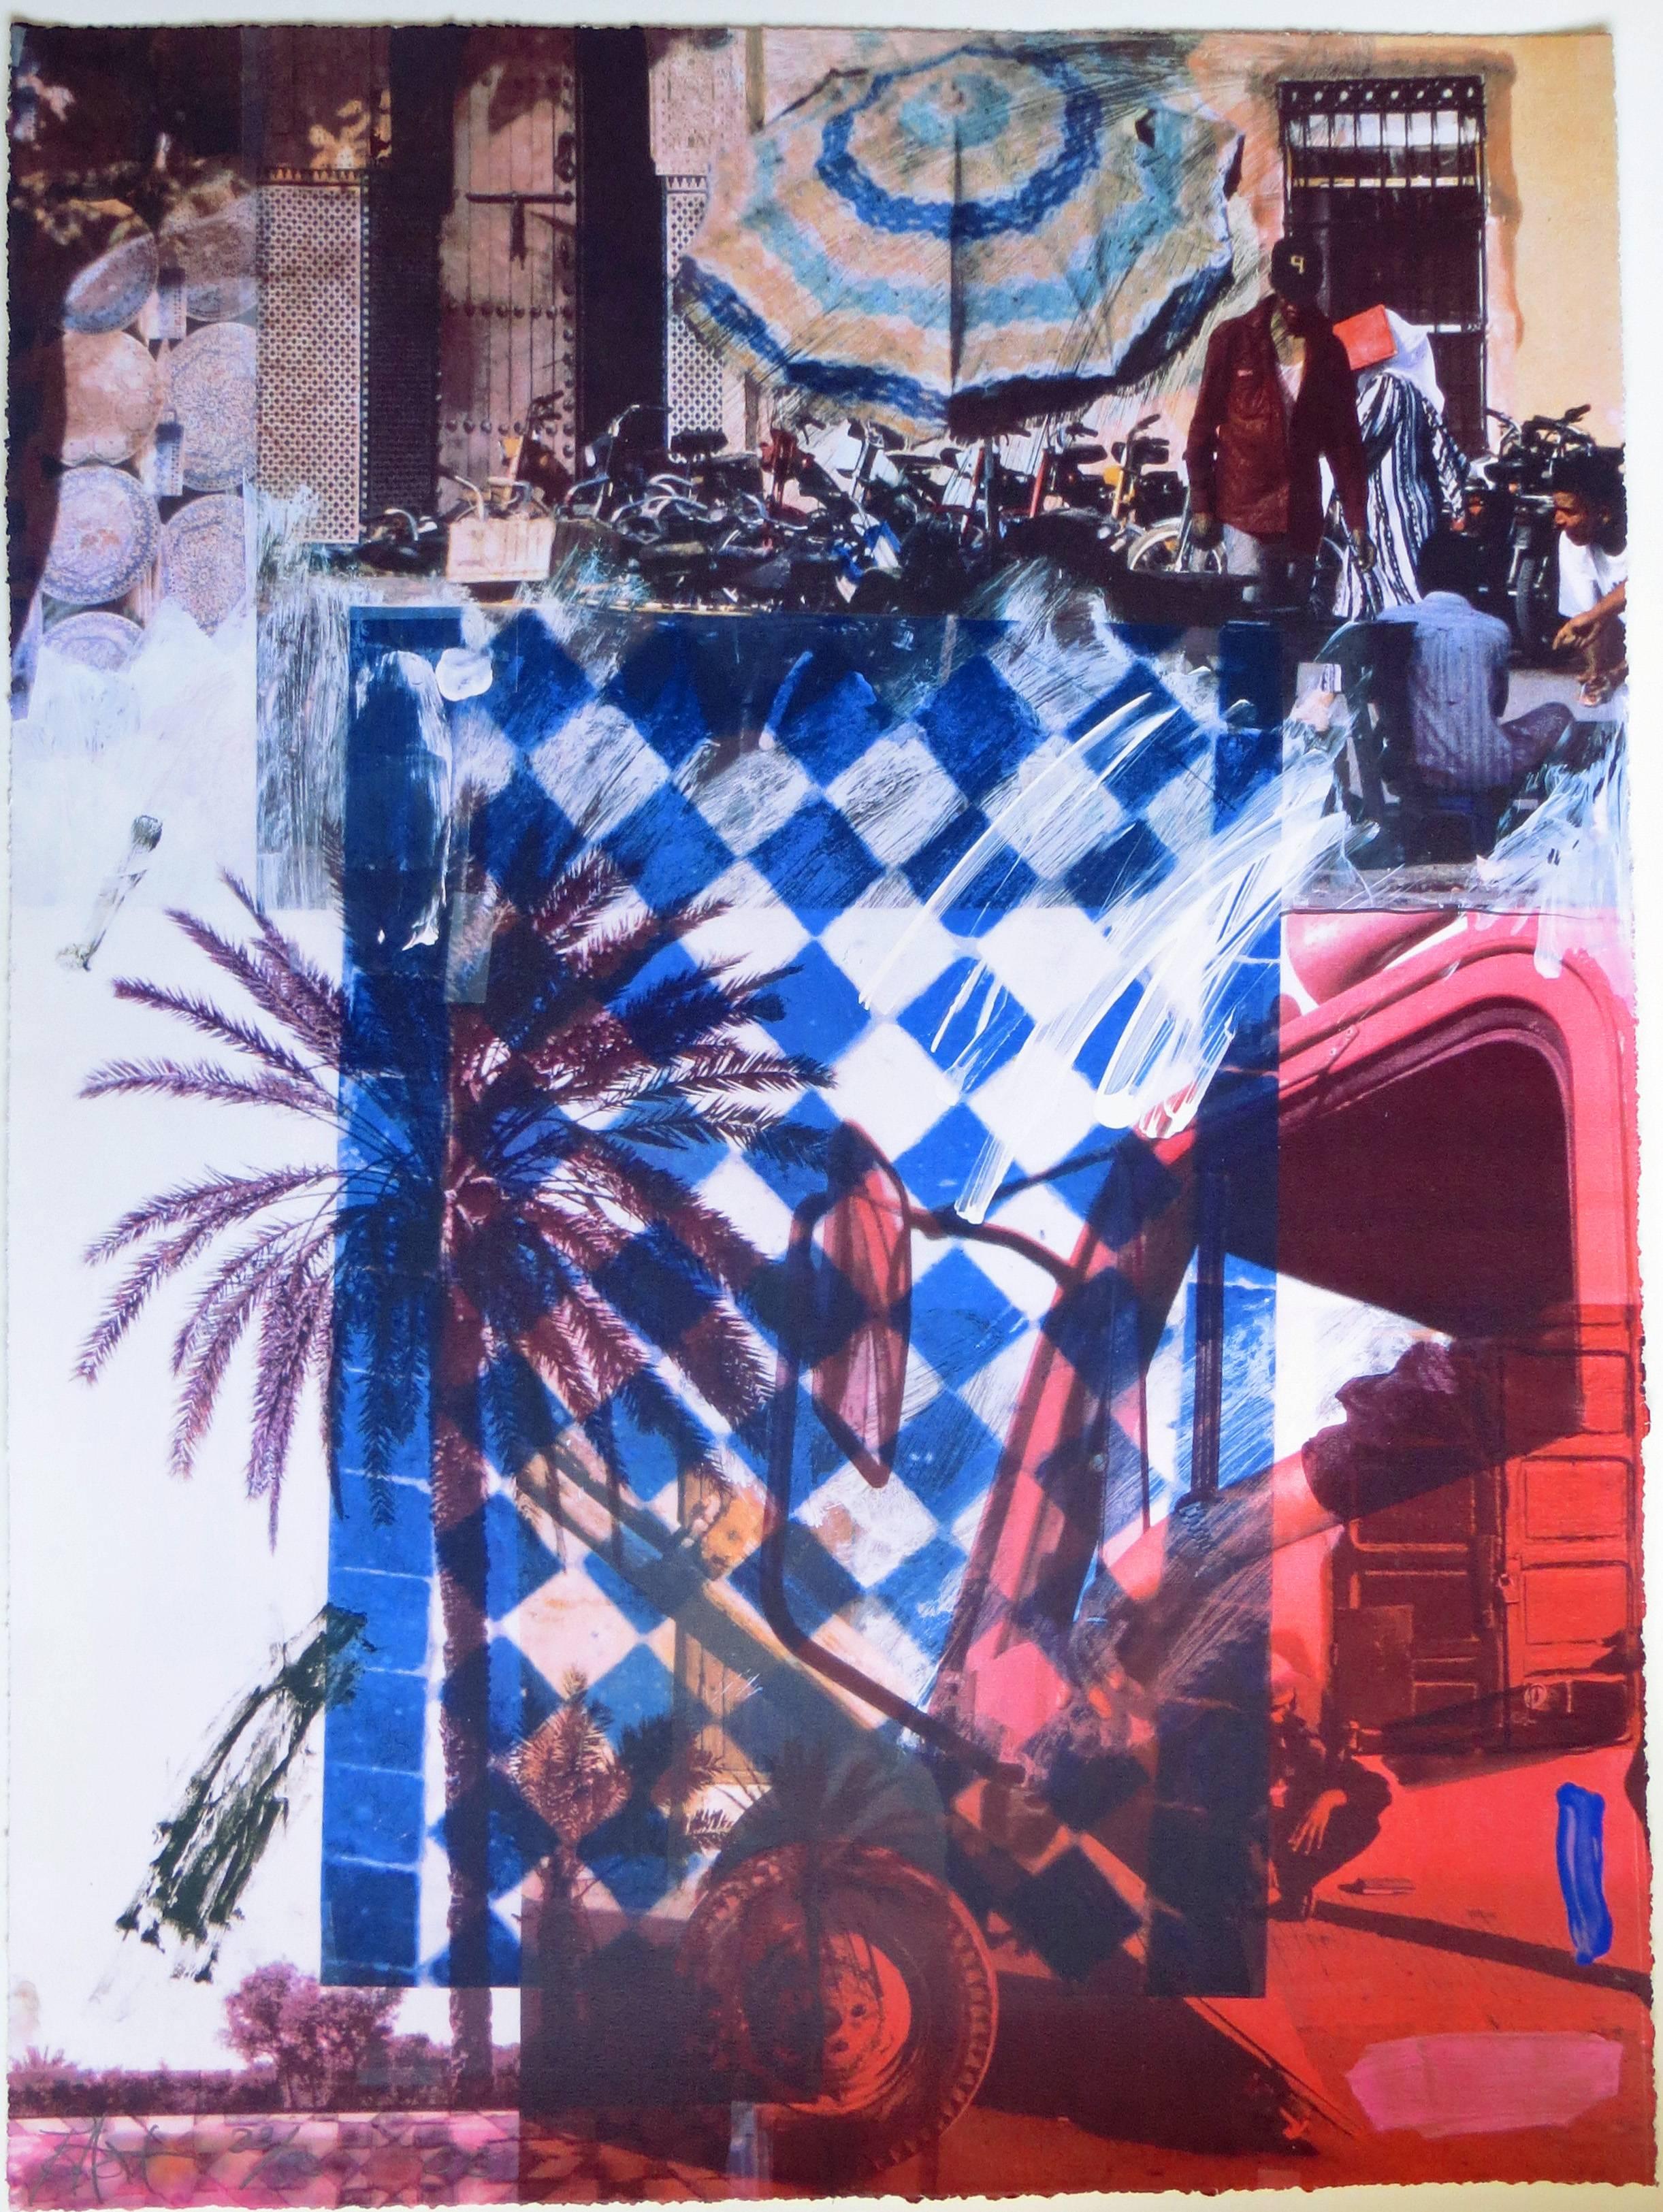 Dieser beeindruckende 12-Farben-Siebdruck ist von Darryl Pottorf  (1952- ) Der Druck trägt den Titel "Truck Stop de Marra Kech". Gedruckt und veröffentlicht wurde es im Jahr 2000 vom bekannten Künstleratelier A.E.L., einem Verlag für Kunstdrucke und